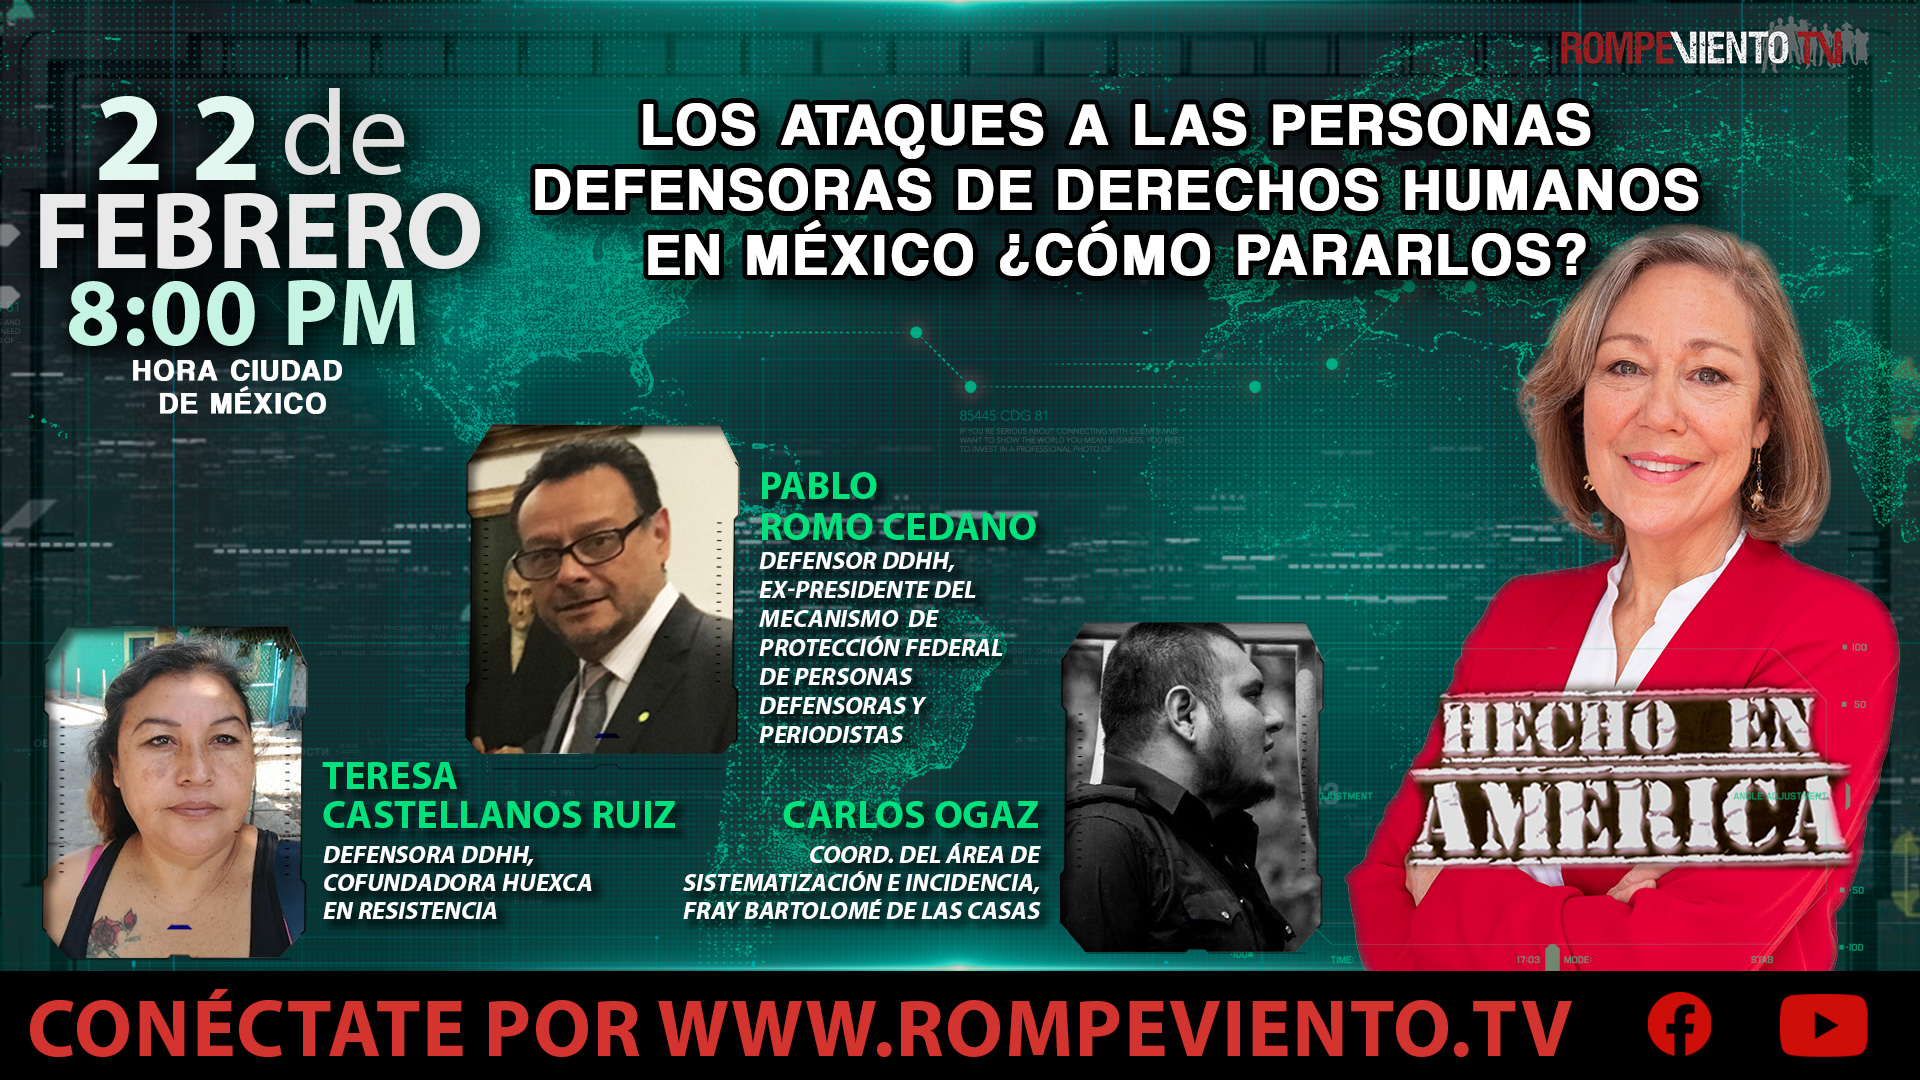 Los ataques a las personas defensoras de DDHH en México ¿Cómo pararlos? - Hecho en América